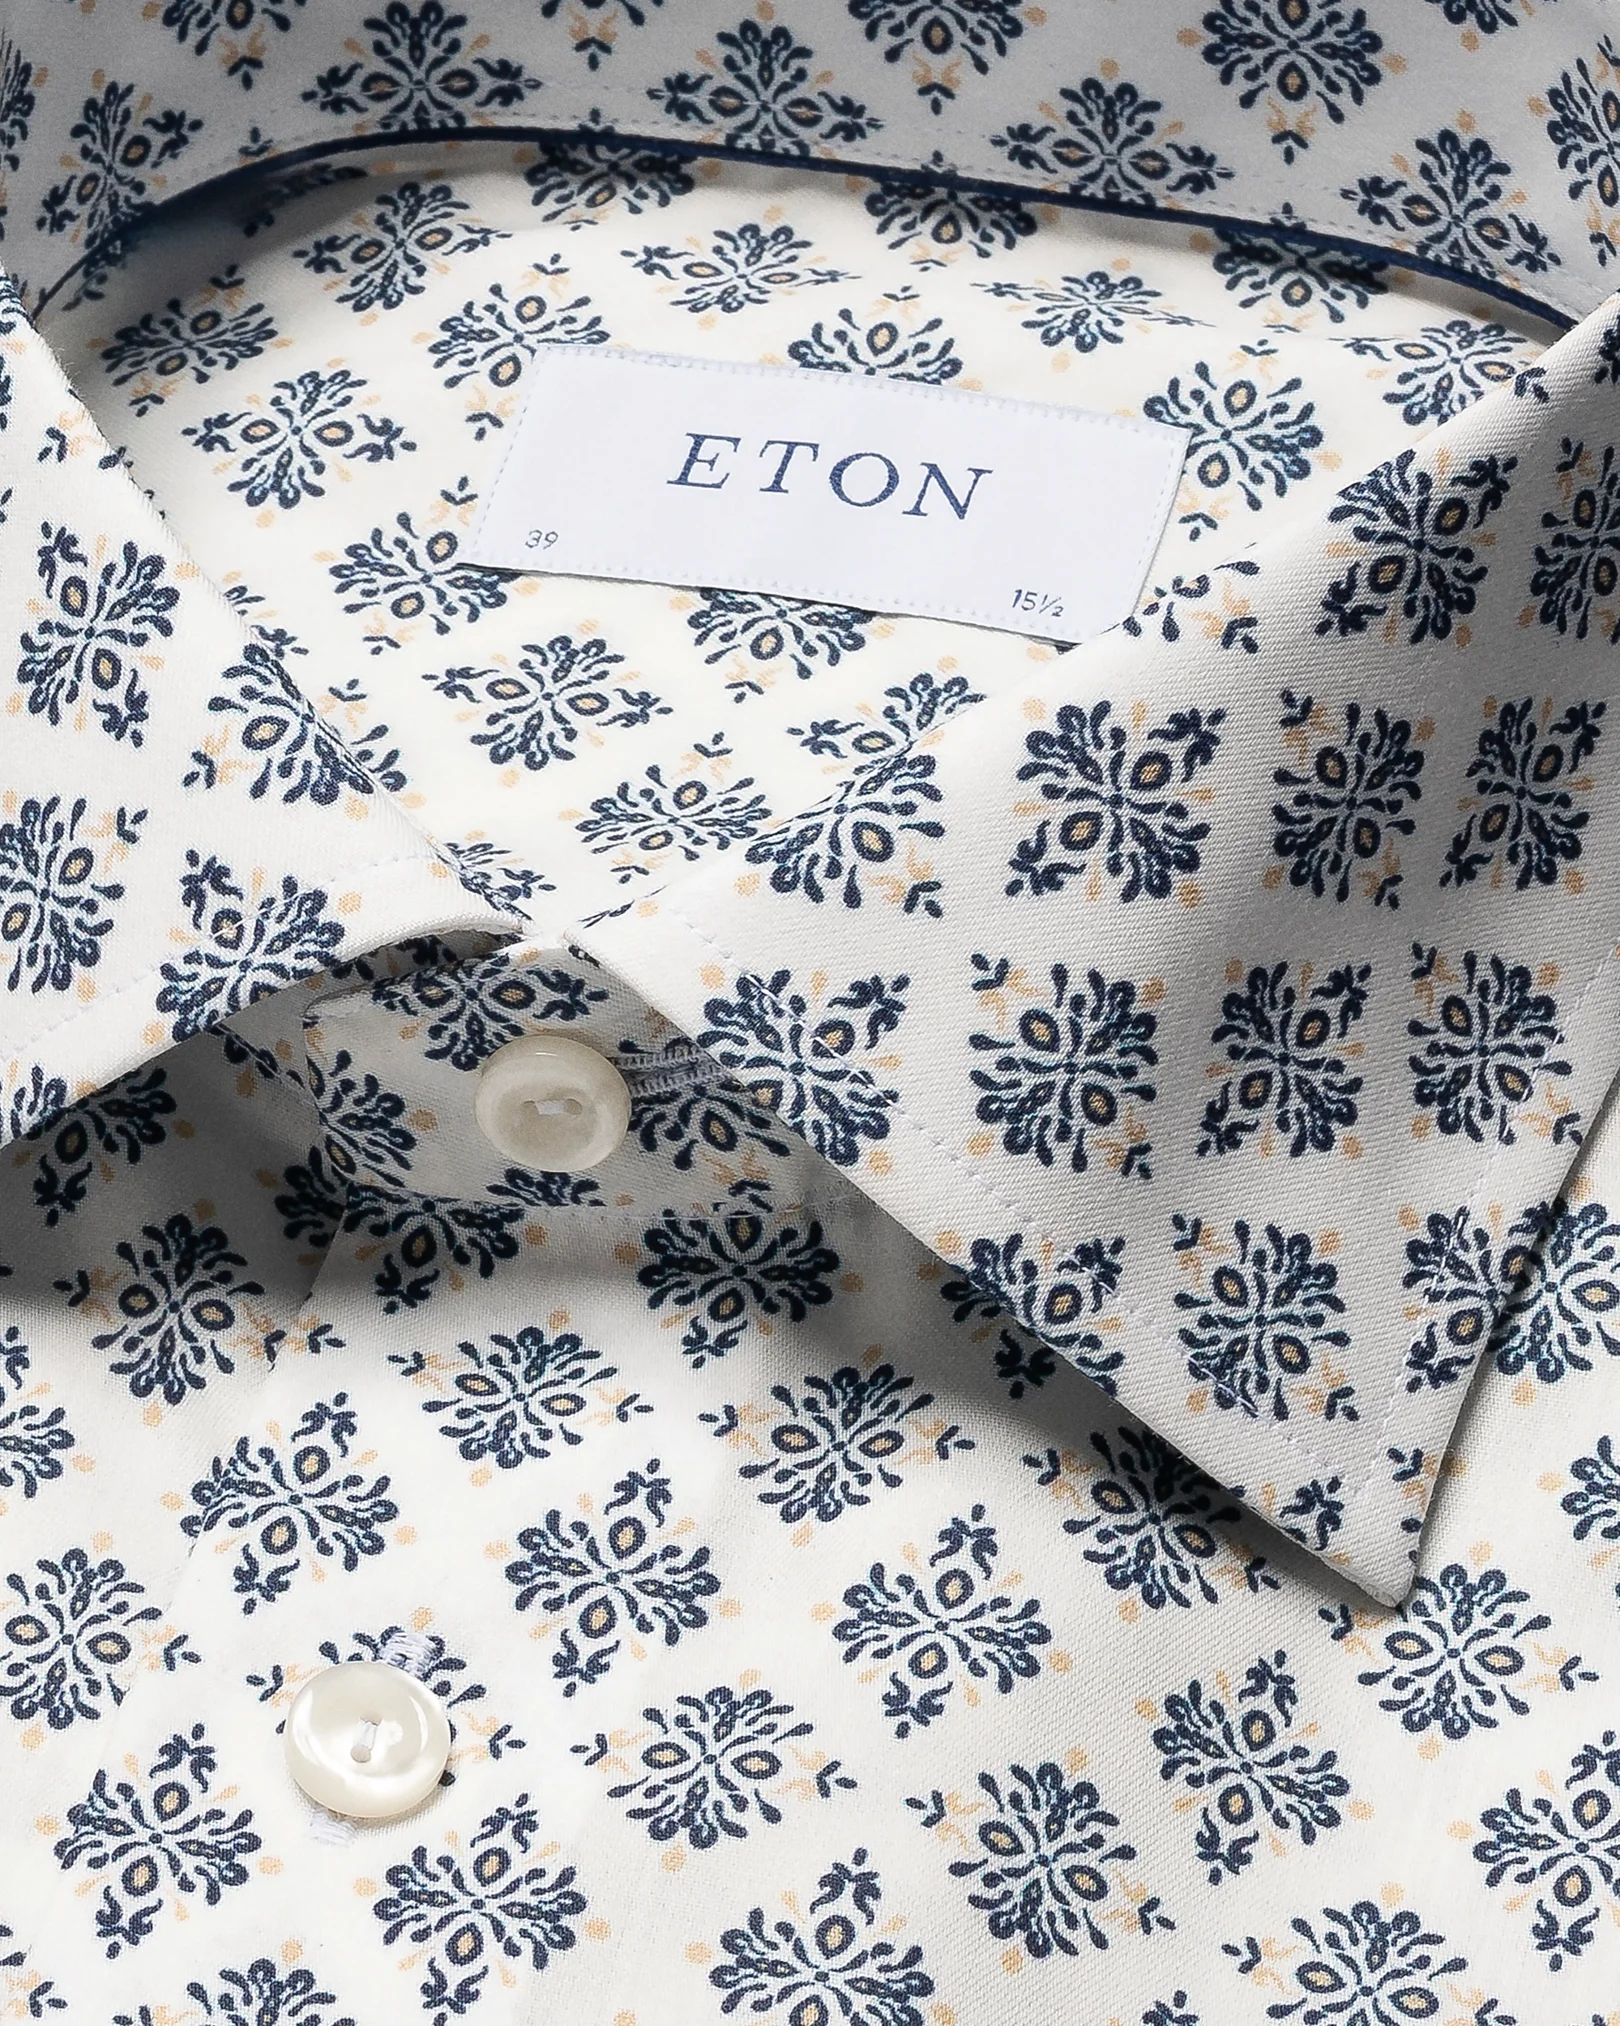 Eton - white cotton tencel mdedallion shirt